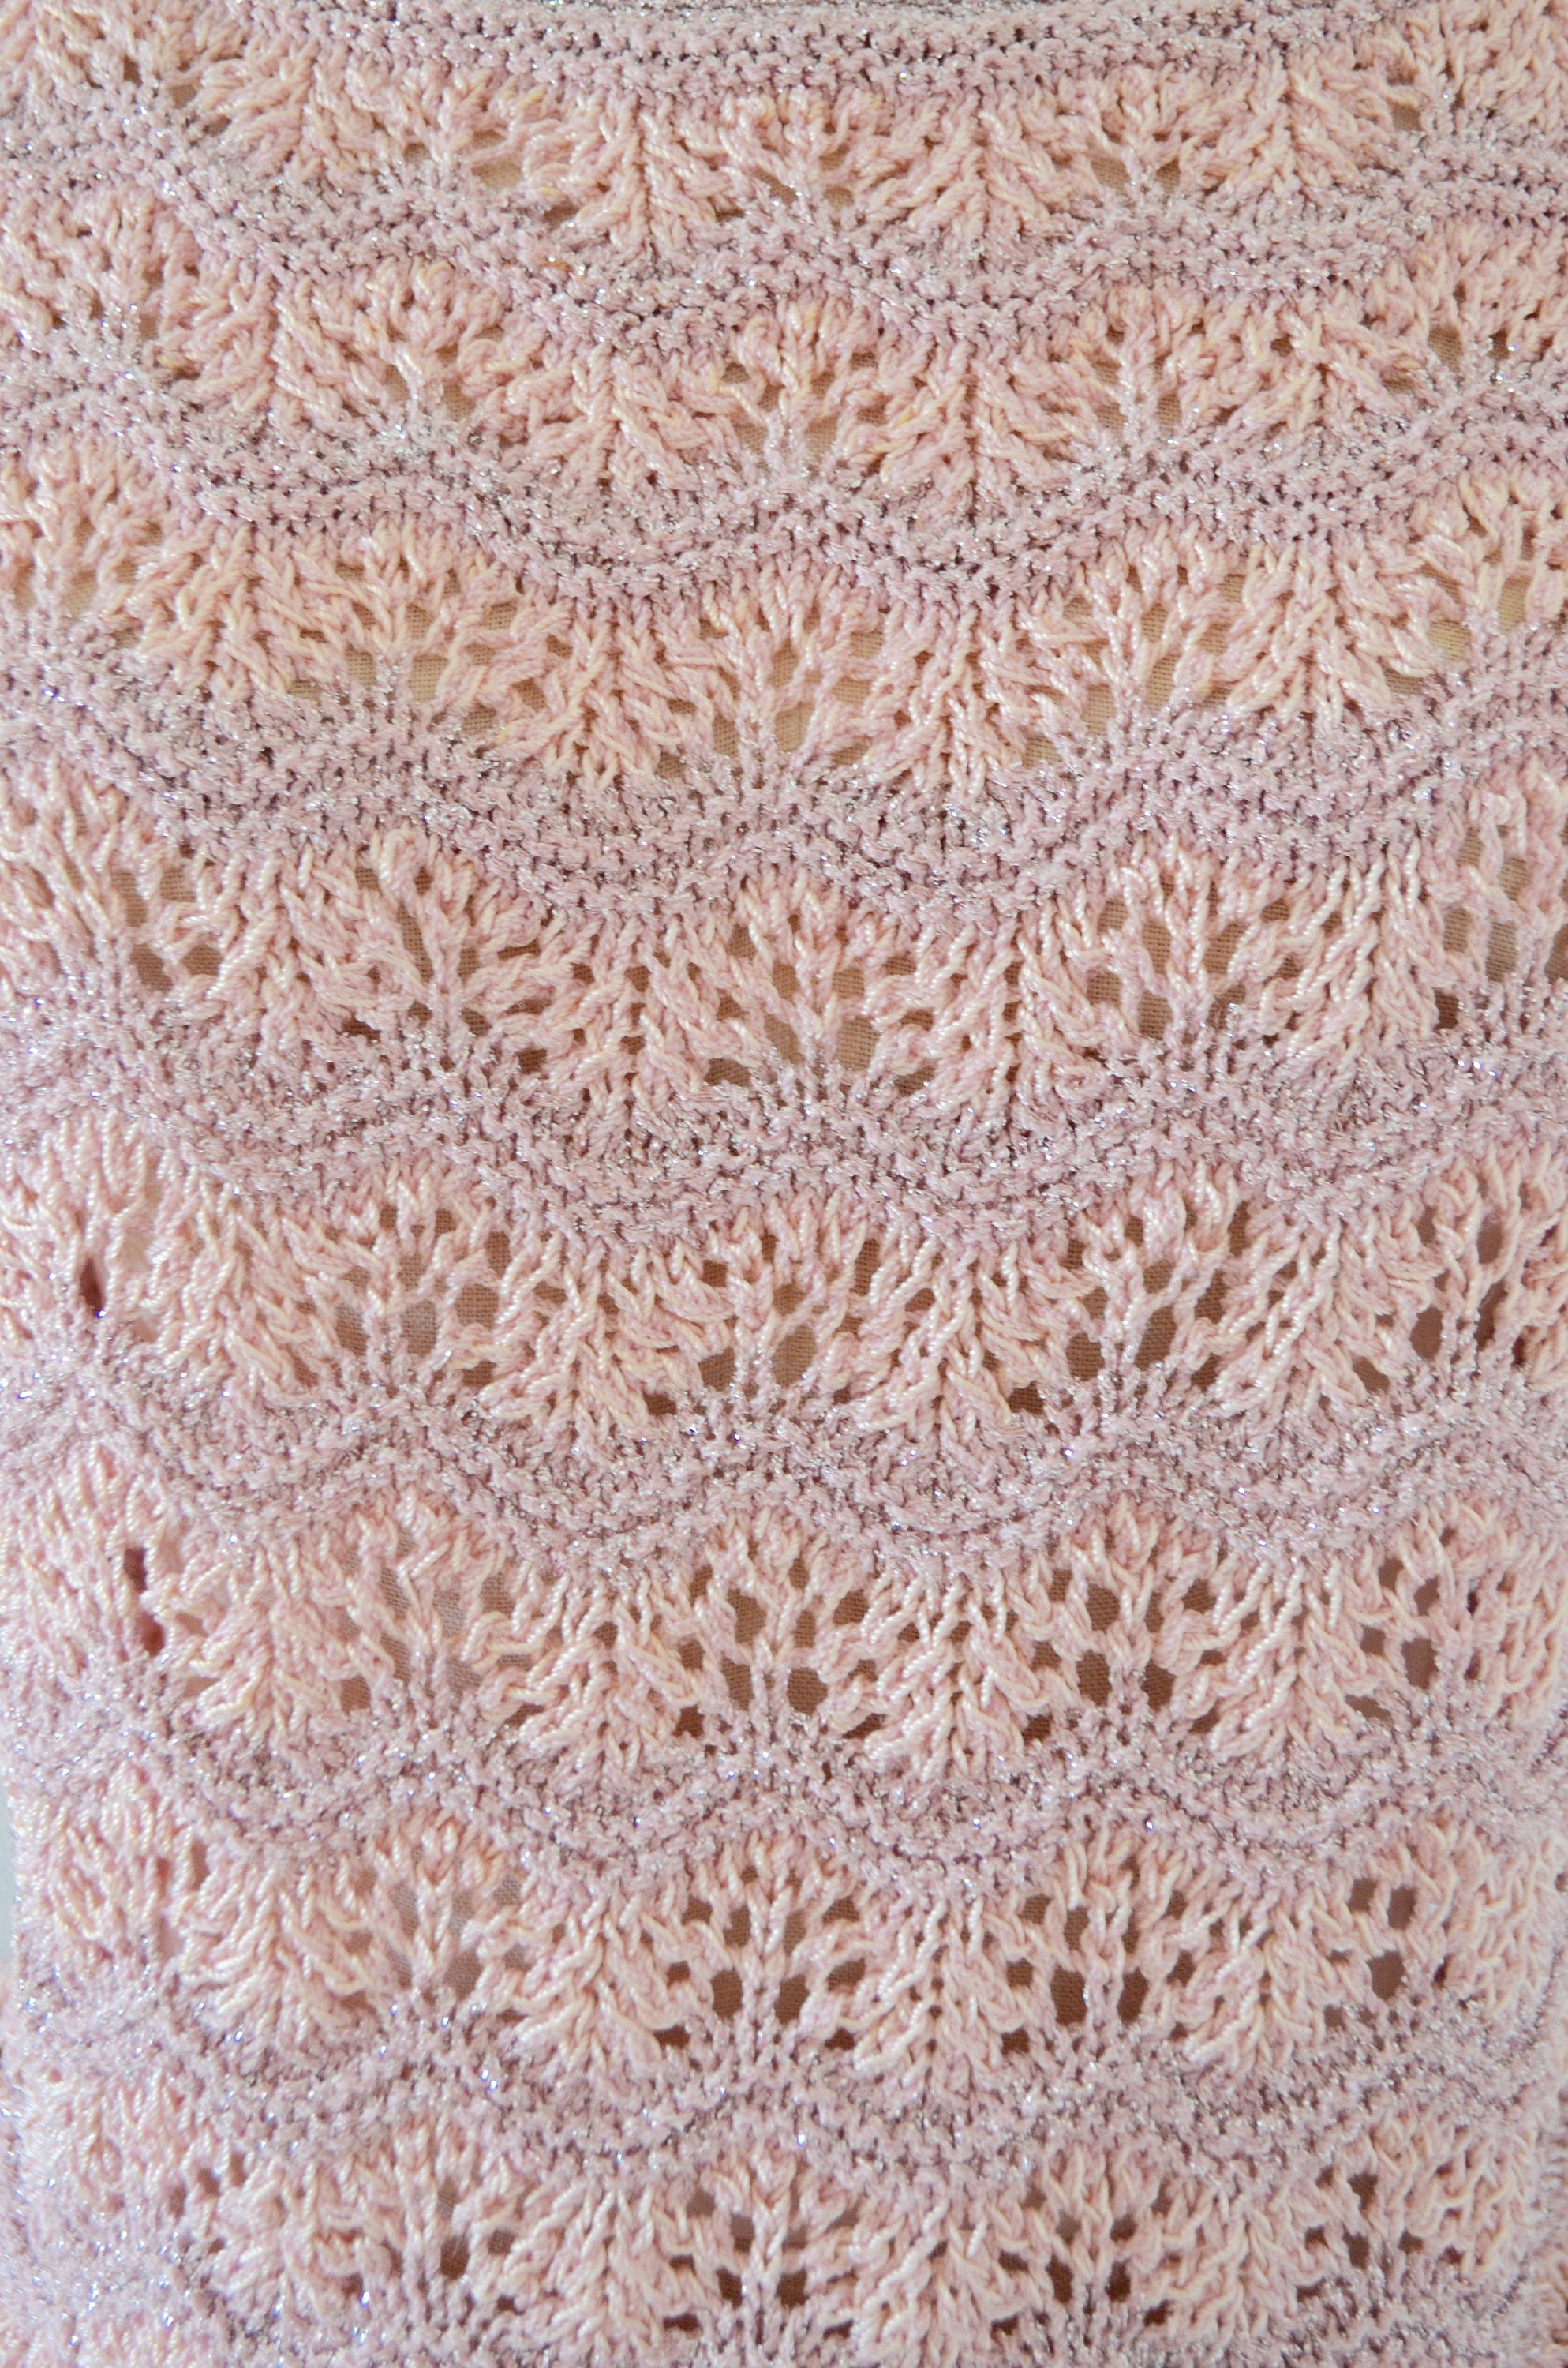 Pink Pastel Chevron Lace Knit Crochet Sweater Pink Silver Metallic Top Bohemian